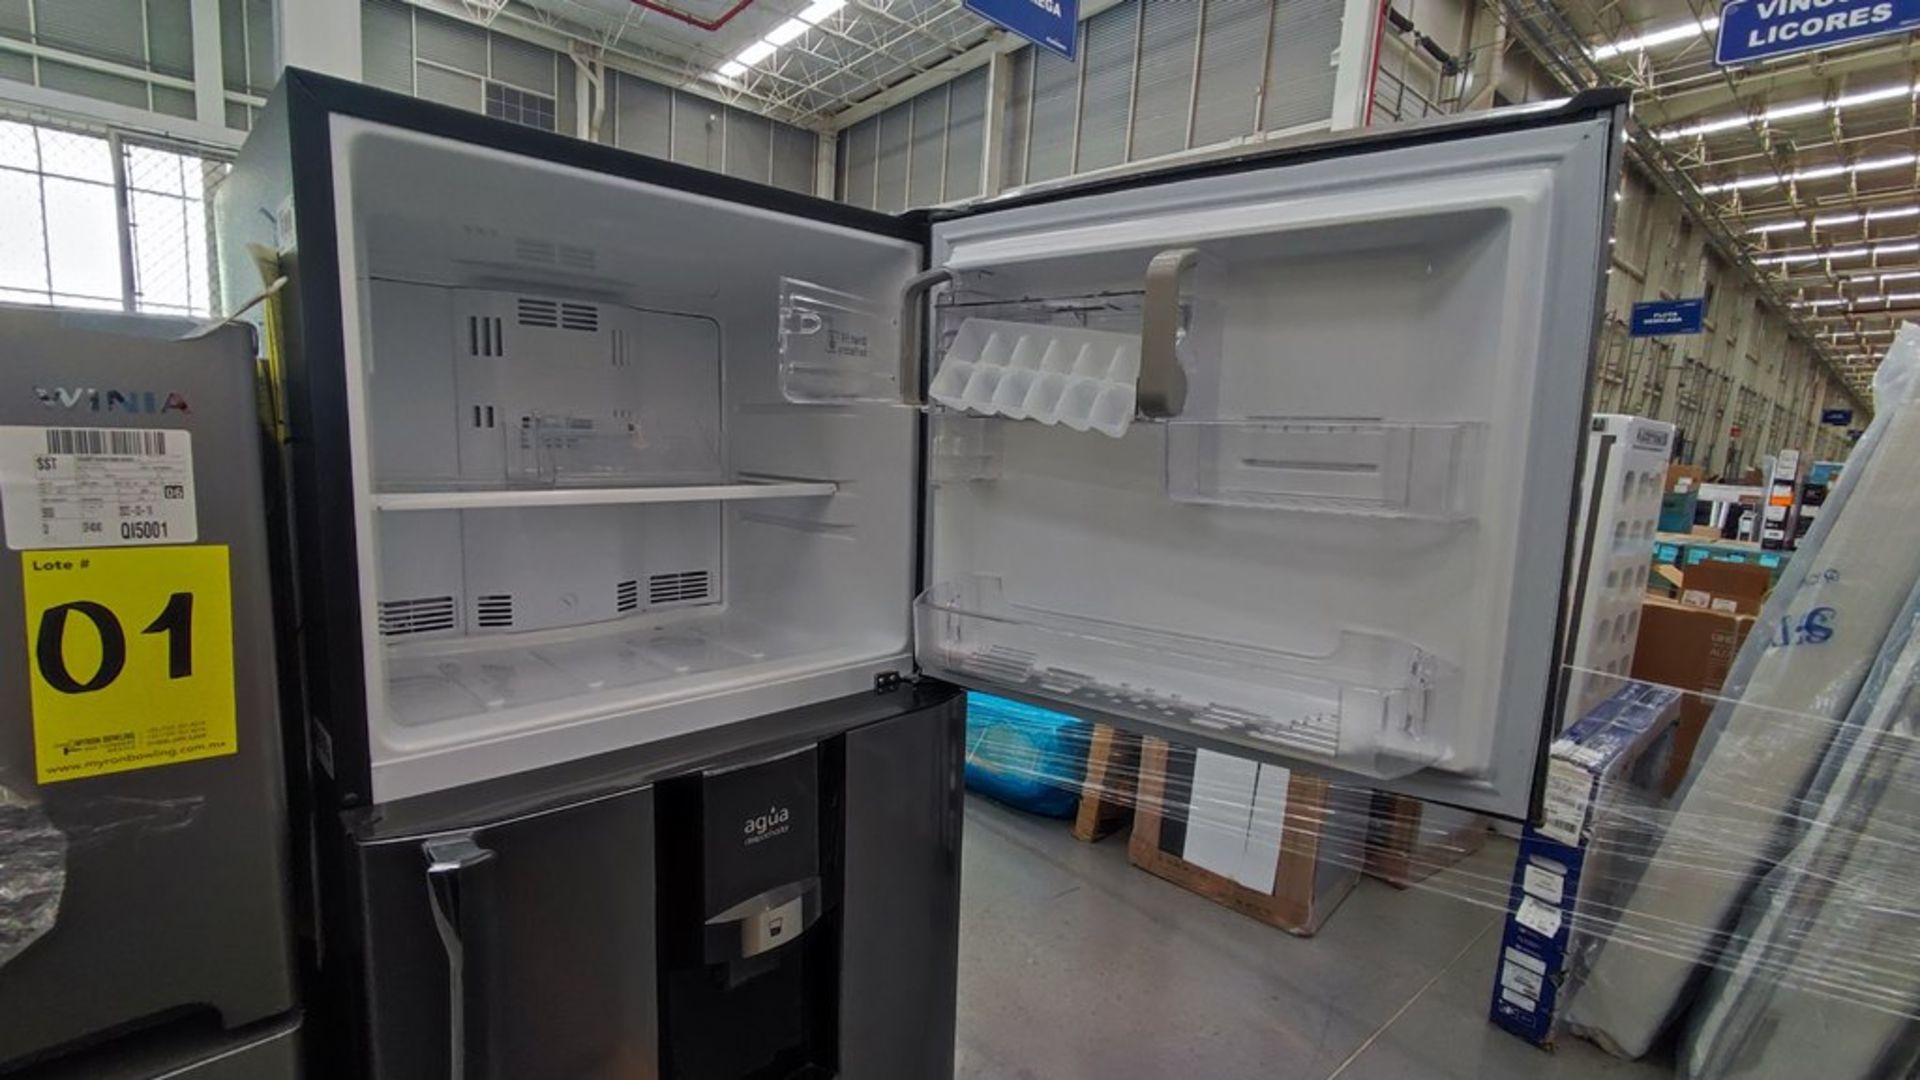 Lote de 2 refrigeradores contiene: 1 Refrigerador Marca Mabe, Modelo RMT400RY, No de serie 2202B401 - Image 7 of 15